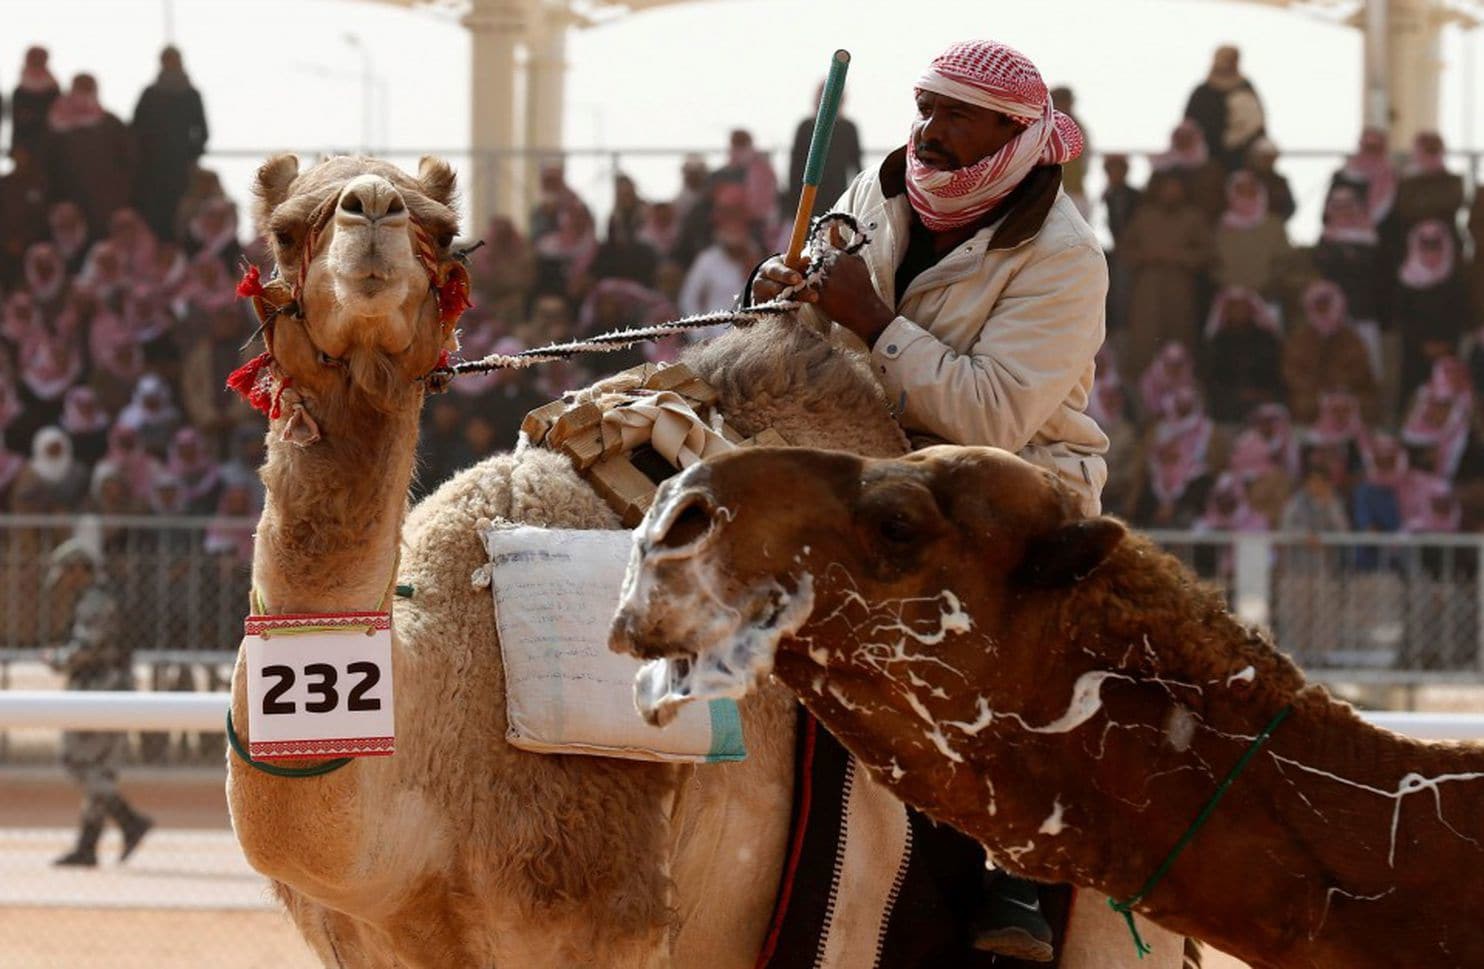 Khám phá lễ hội đấu vật lạc đà lâu đời ở Thổ Nhĩ Kỳ